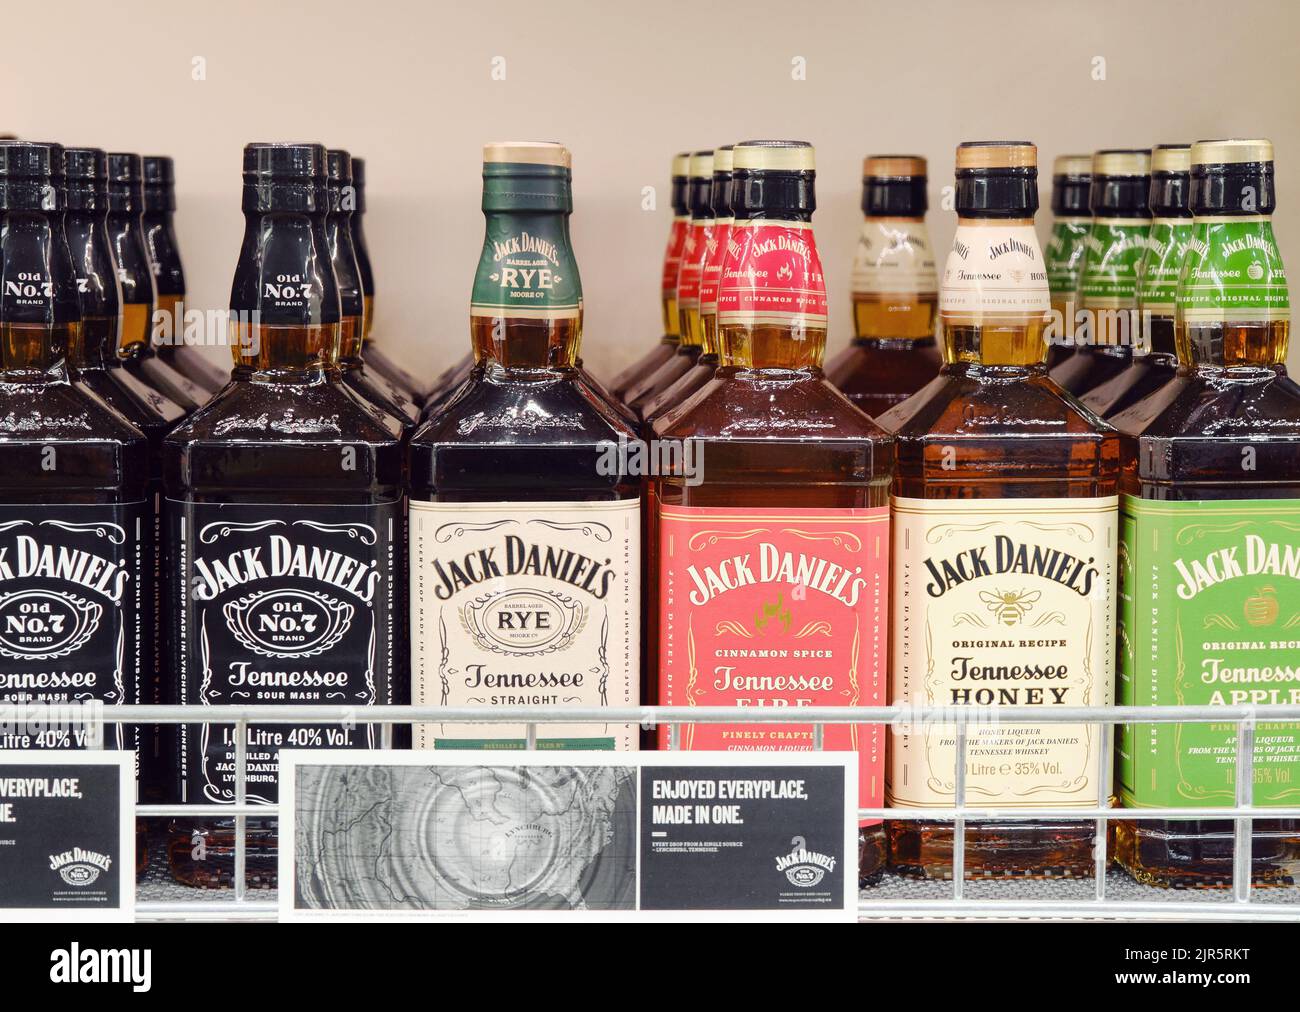 Selección de botellas de whisky Jack Daniels en el estante de la tienda de bebidas alcohólicas Foto de stock